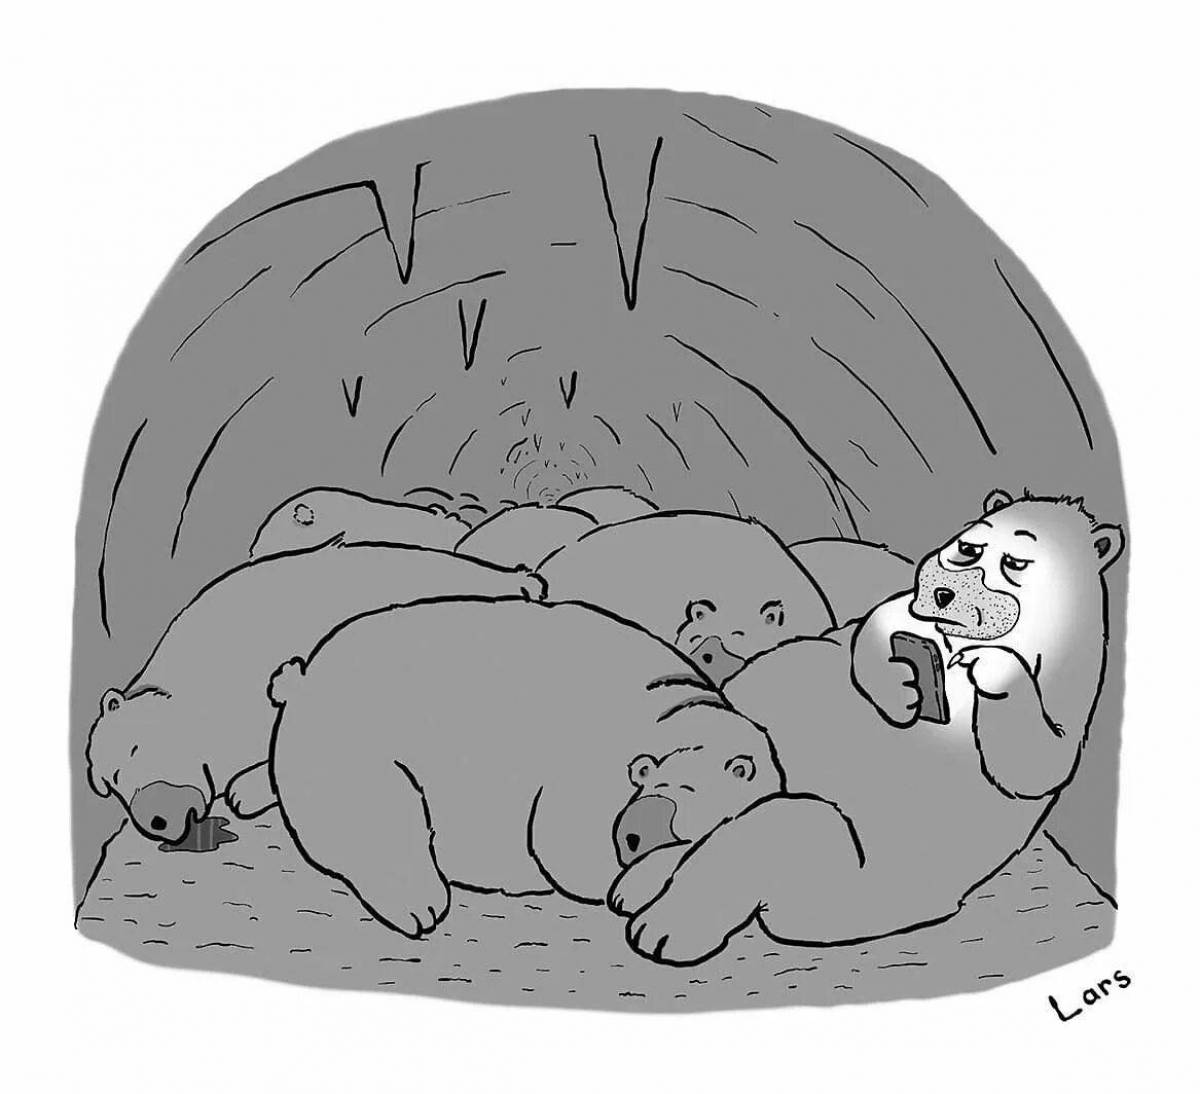 Calm coloring of a sleeping bear in a den